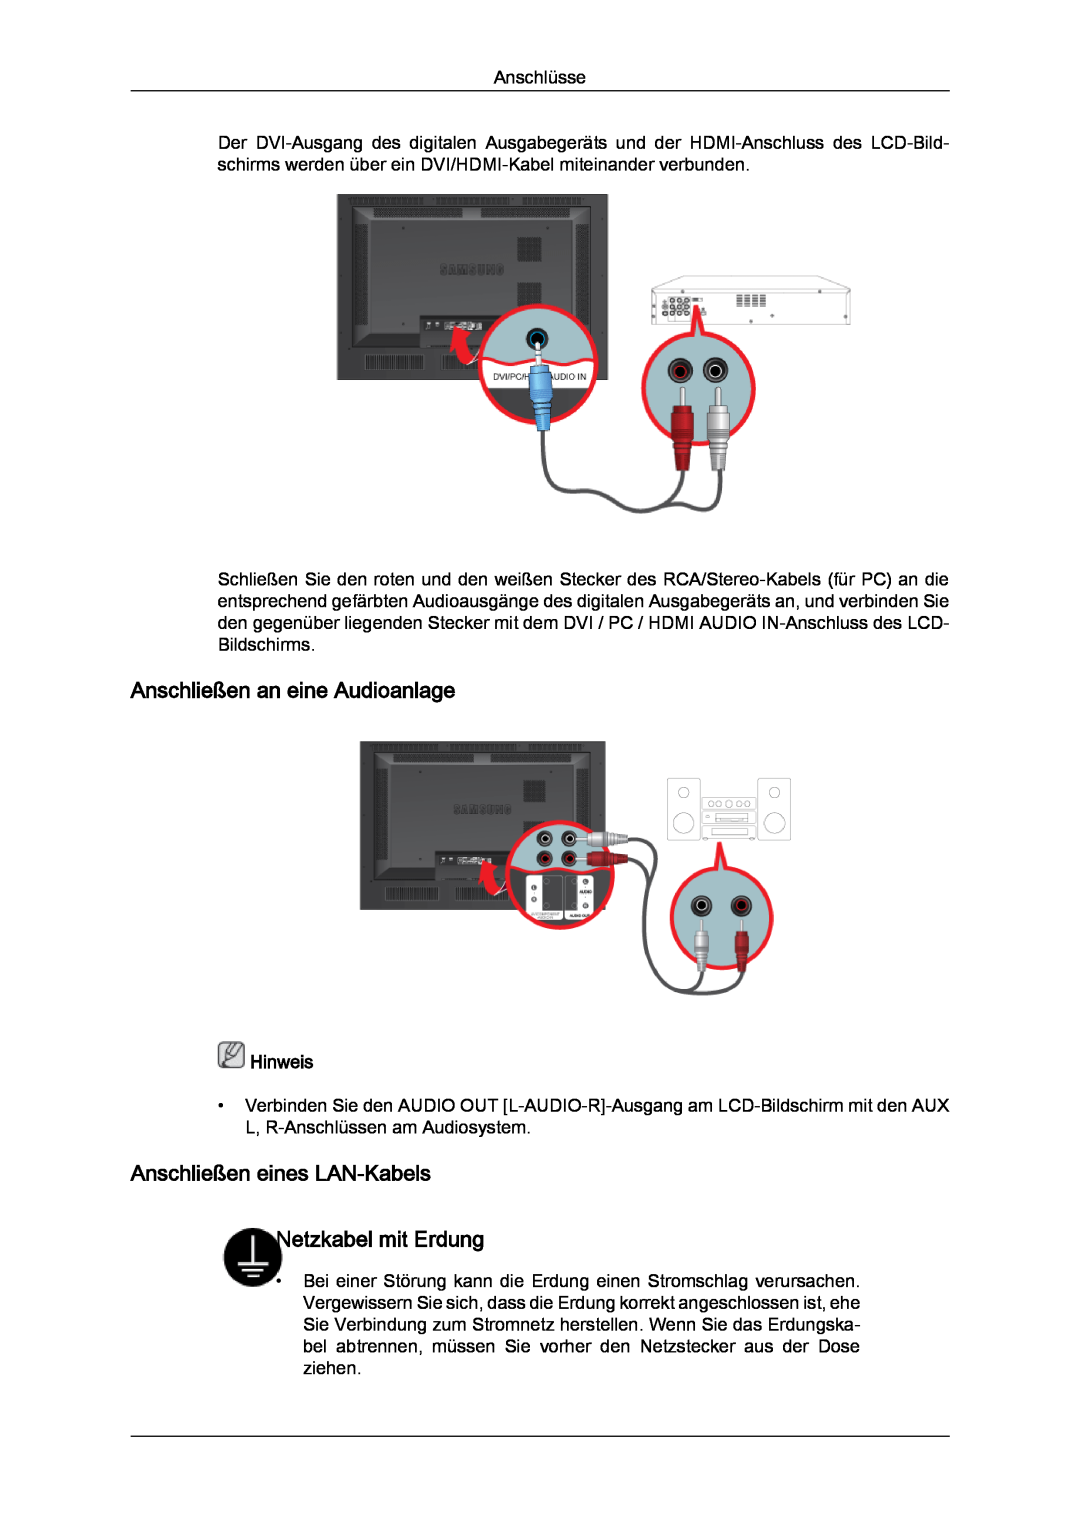 Samsung LH46SOPMBC/EN manual Anschließen an eine Audioanlage, Anschließen eines LAN-Kabels Netzkabel mit Erdung, Hinweis 